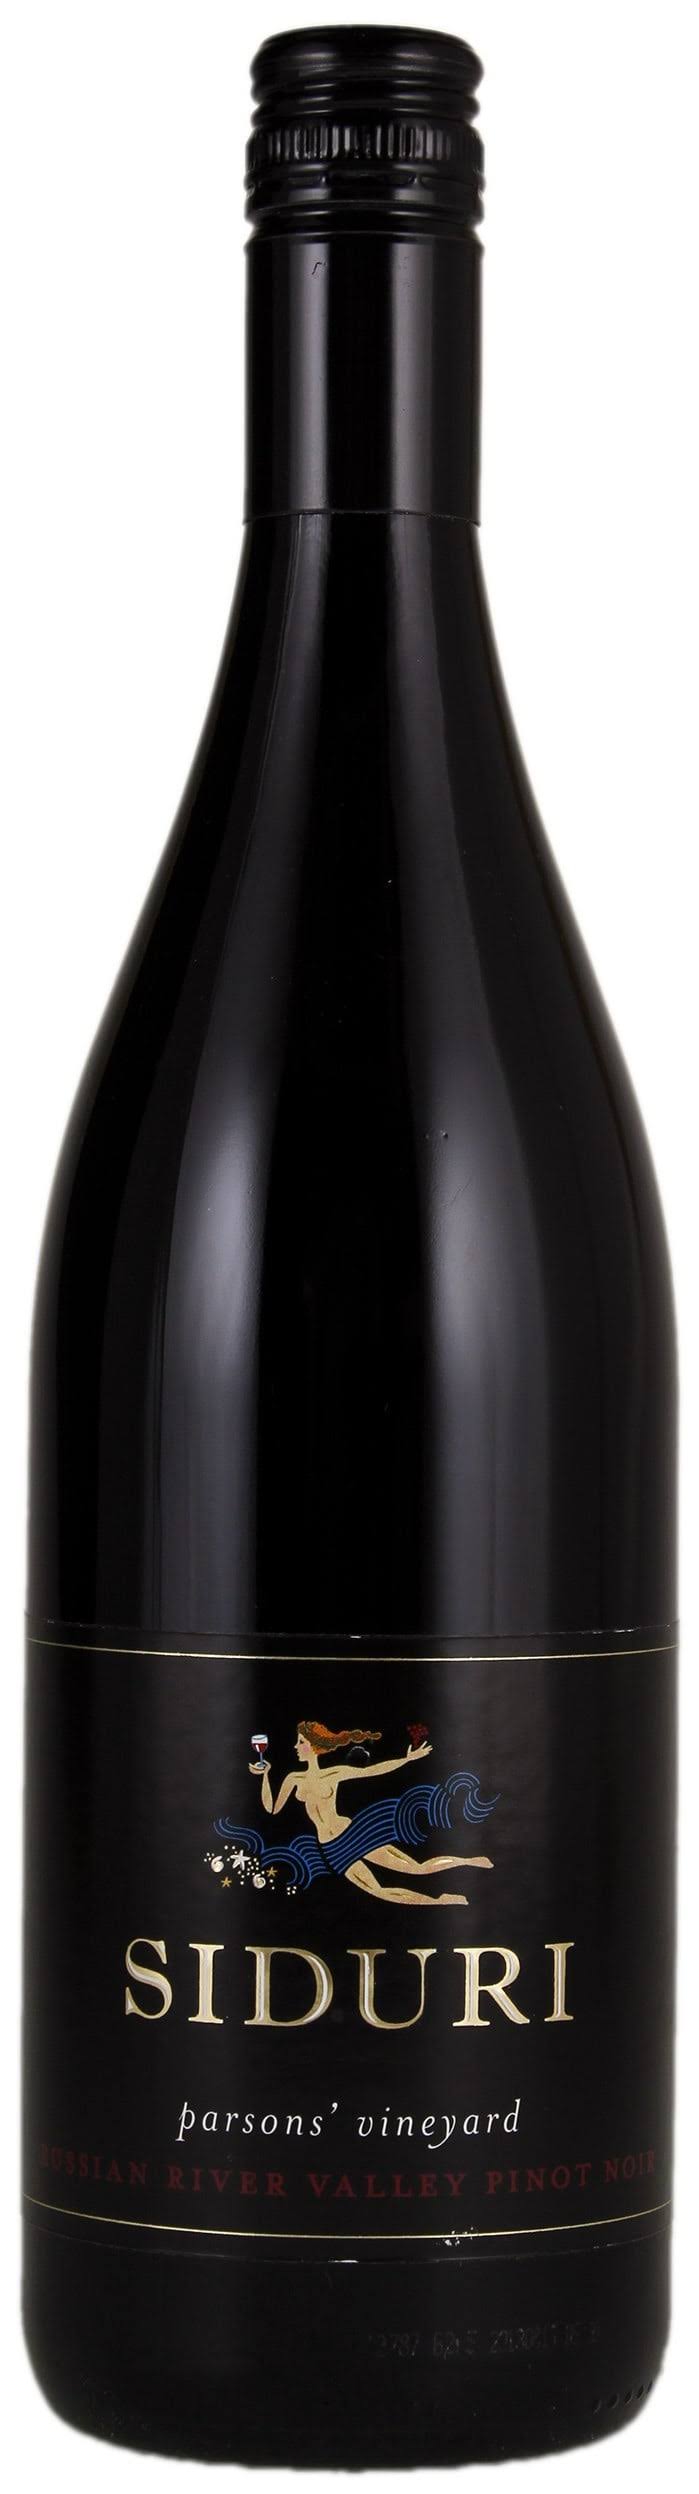 Siduri Pinot Noir Parsons' Vineyard 2014 - 750ml